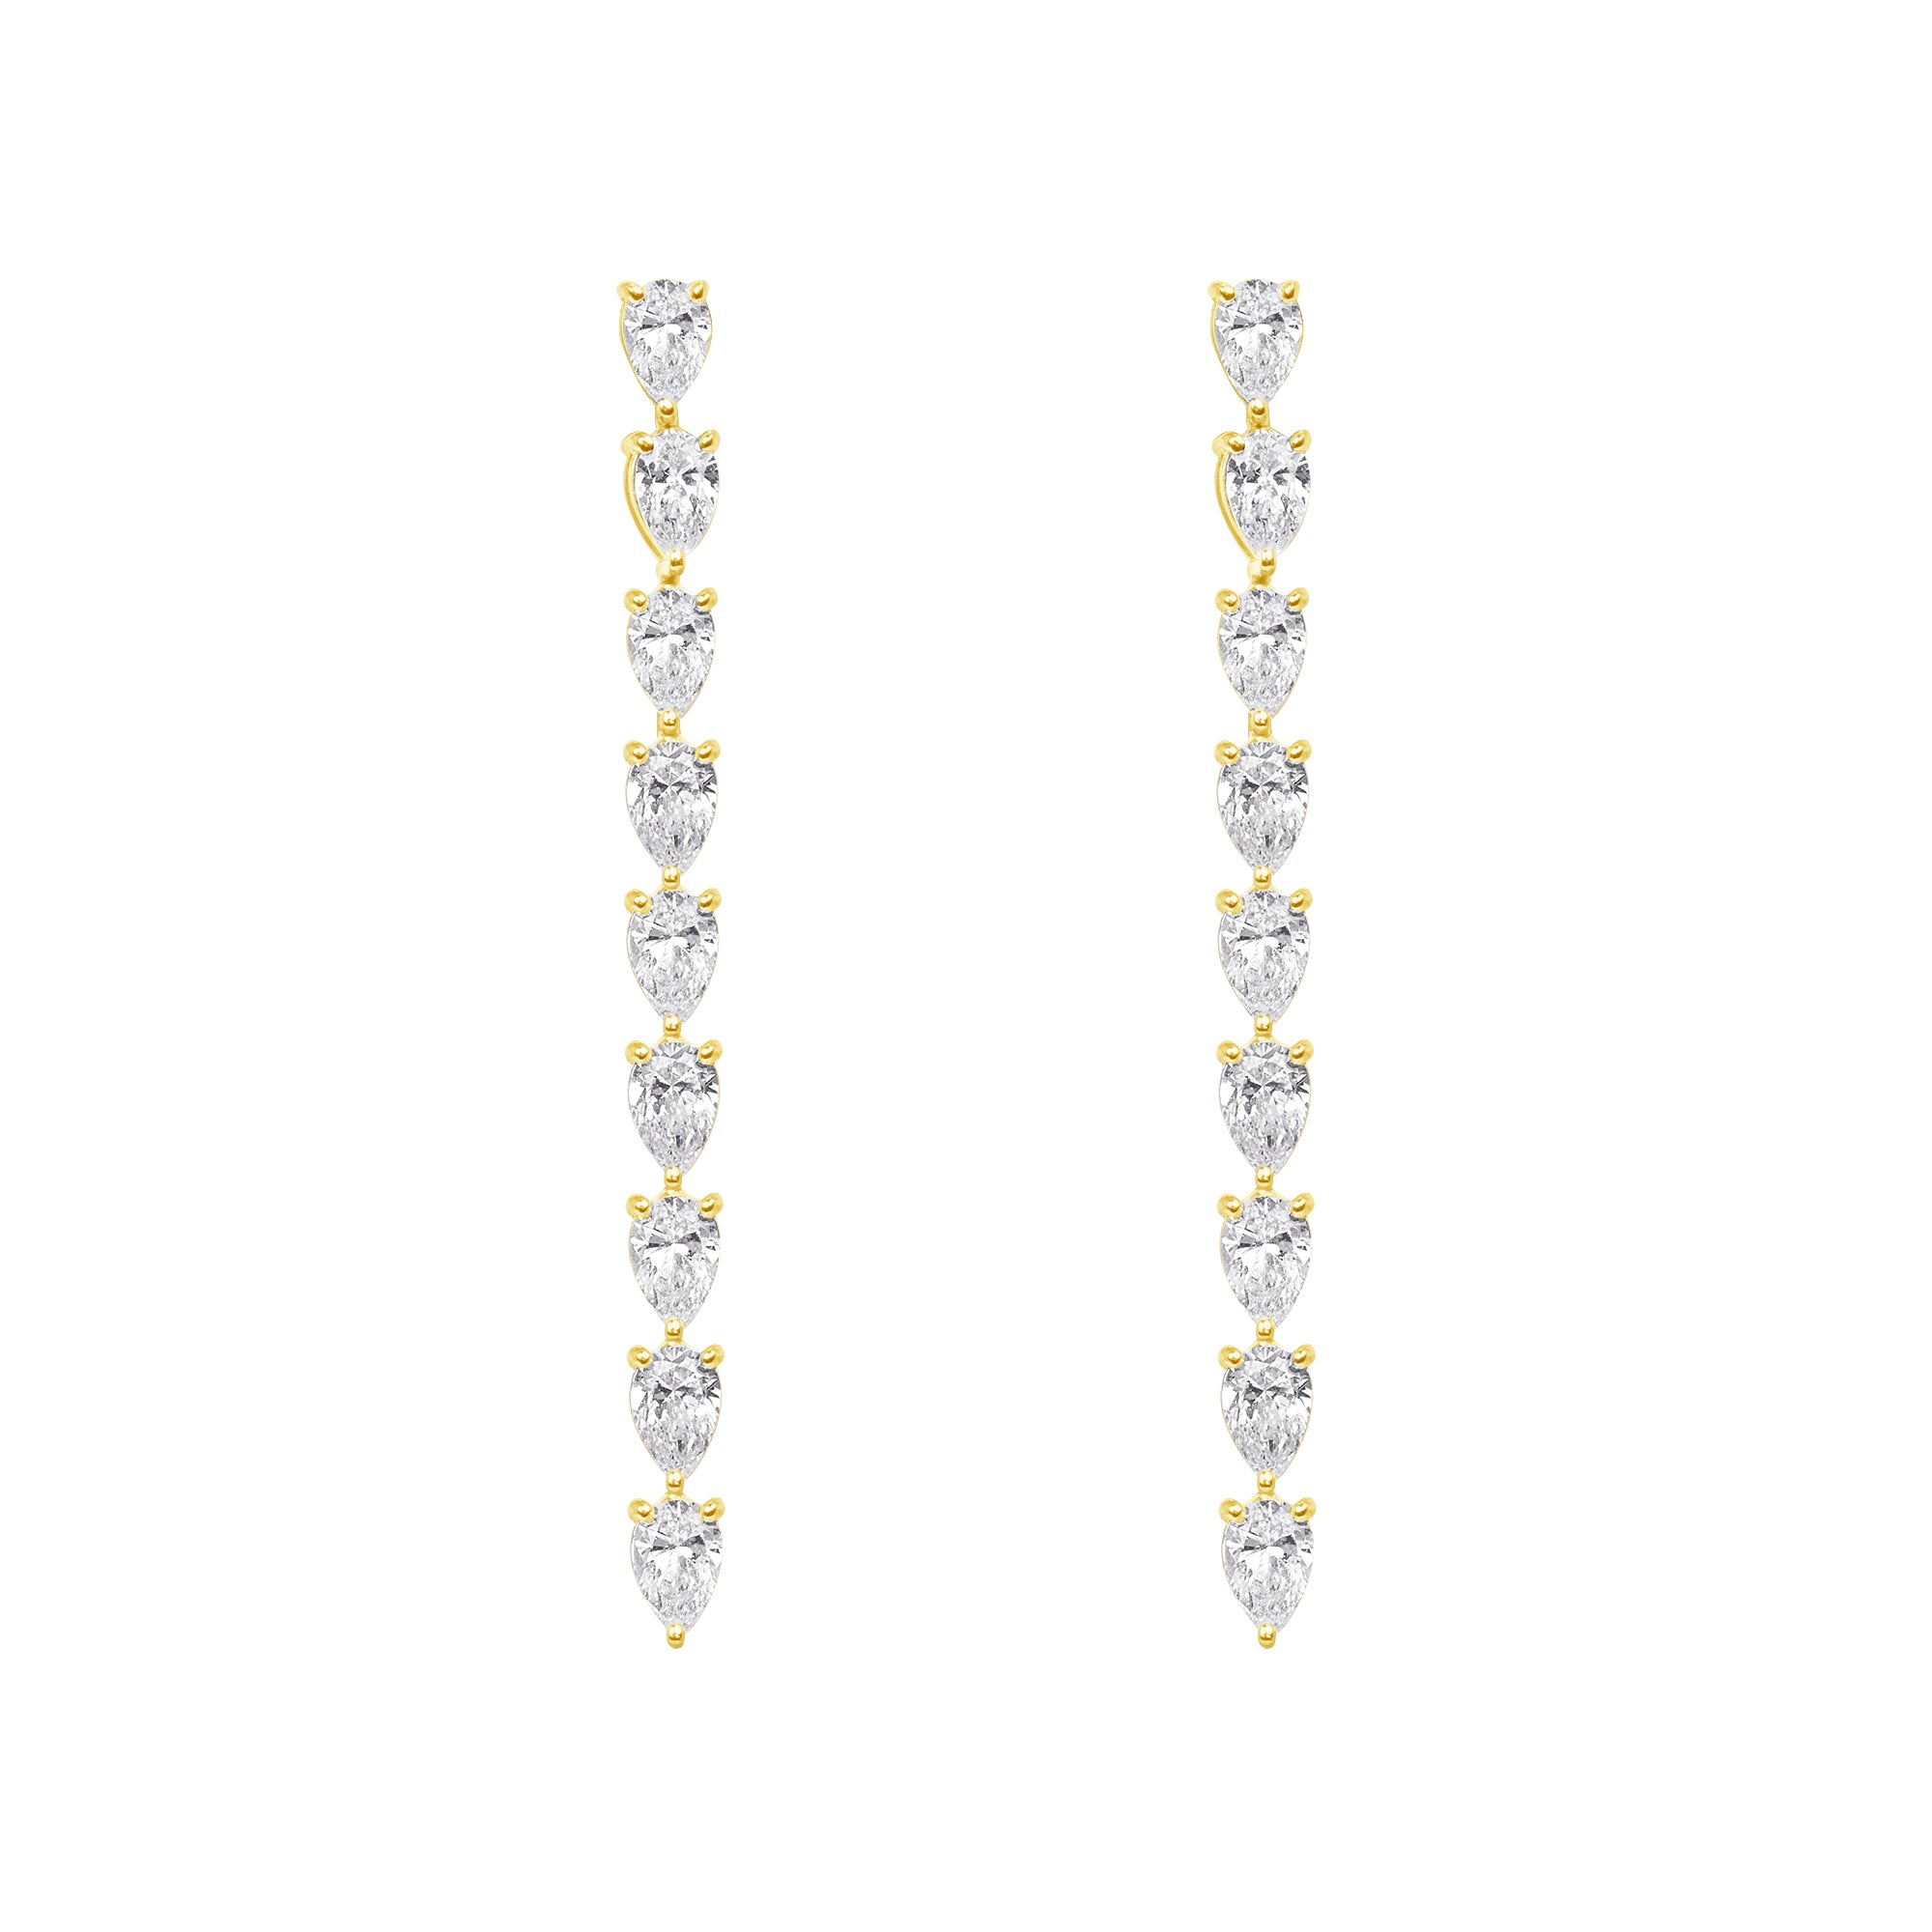 Pear Shaped Diamond Shoulder Duster Earrings in 18K Yellow Gold